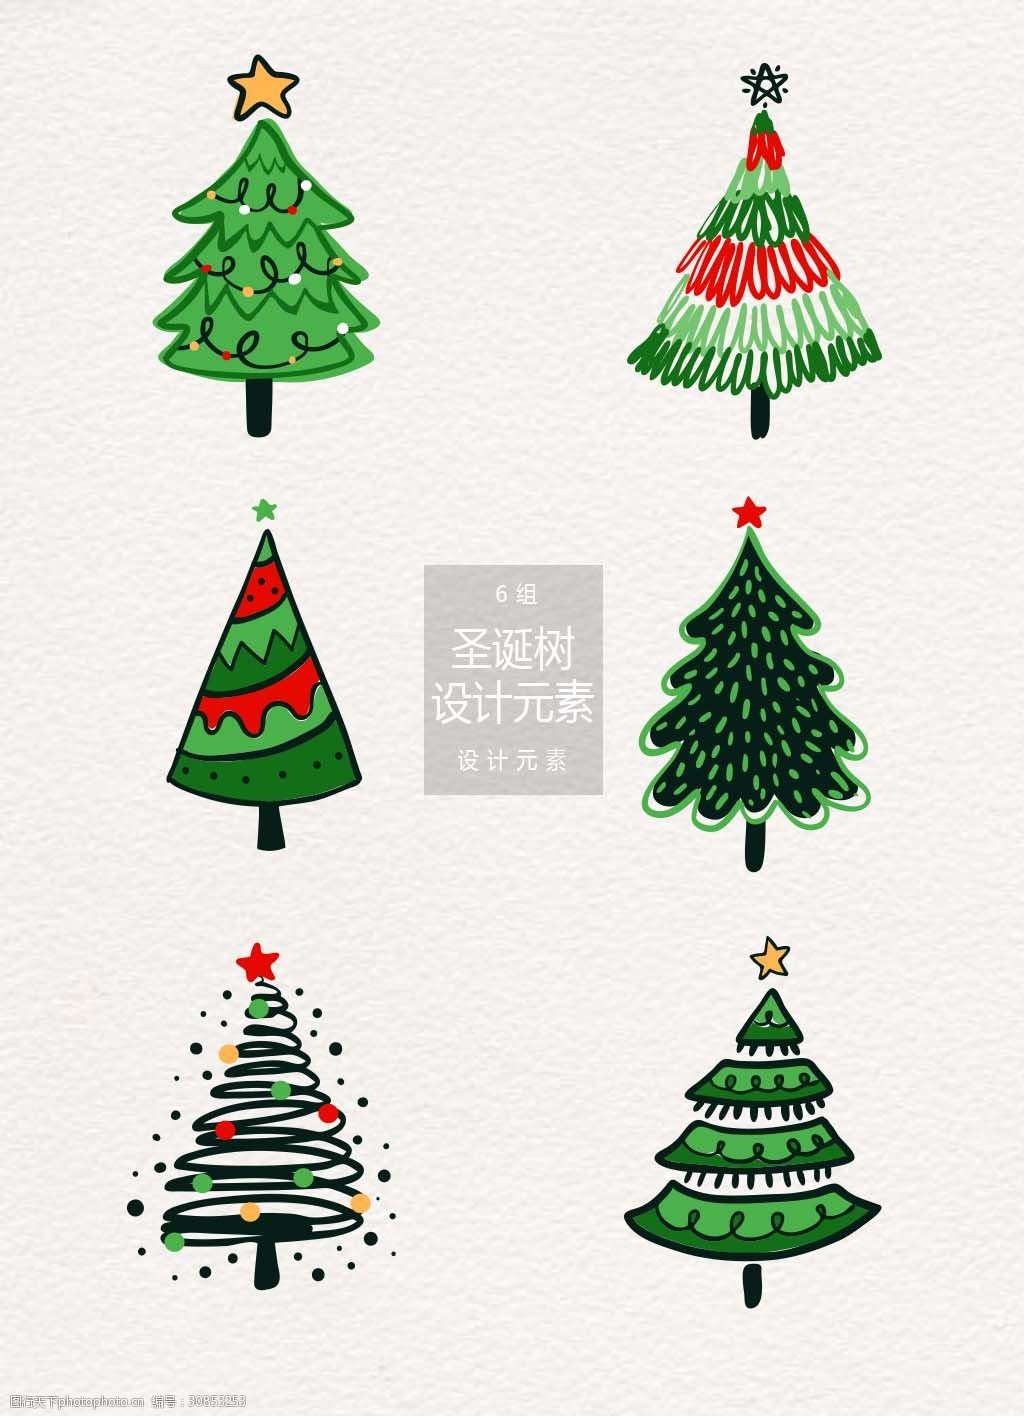 手绘圣诞树设计元素 圣诞树 设计元素 抽象 手绘素材 圣诞节 手绘圣诞